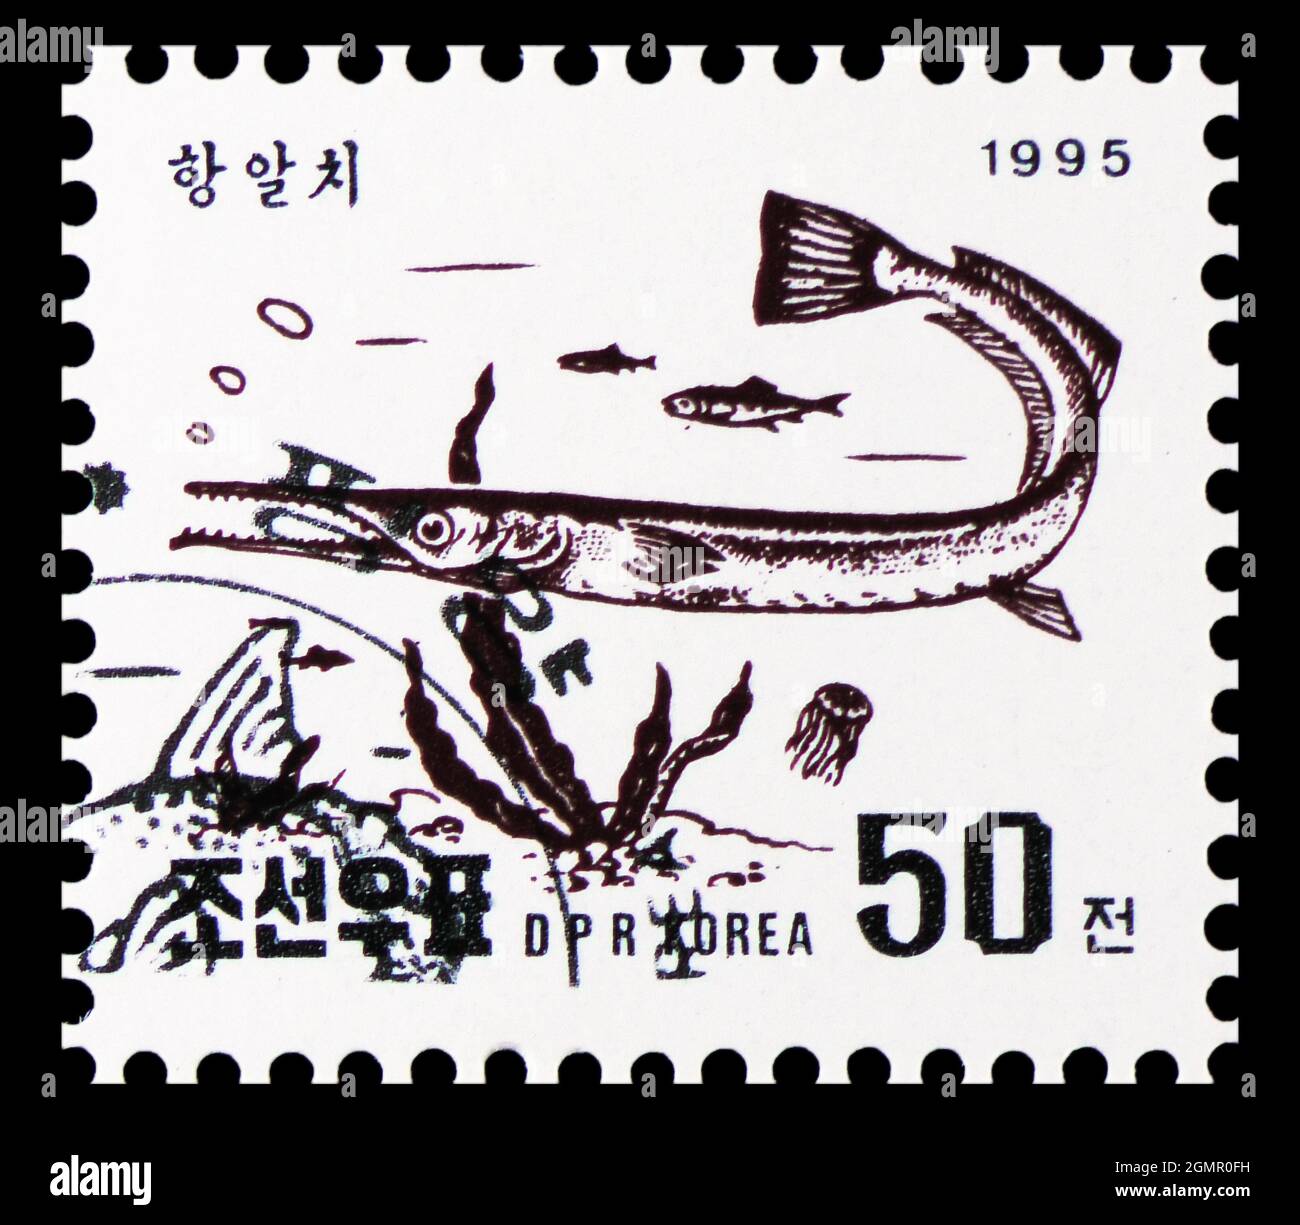 MOSCOU, RUSSIE - 31 JUILLET 2021 : le timbre-poste imprimé en Corée montre le poisson-aiguille Keel-Jawed (Tylosurus acus melanotus), poissons du seri de la mer orientale Banque D'Images